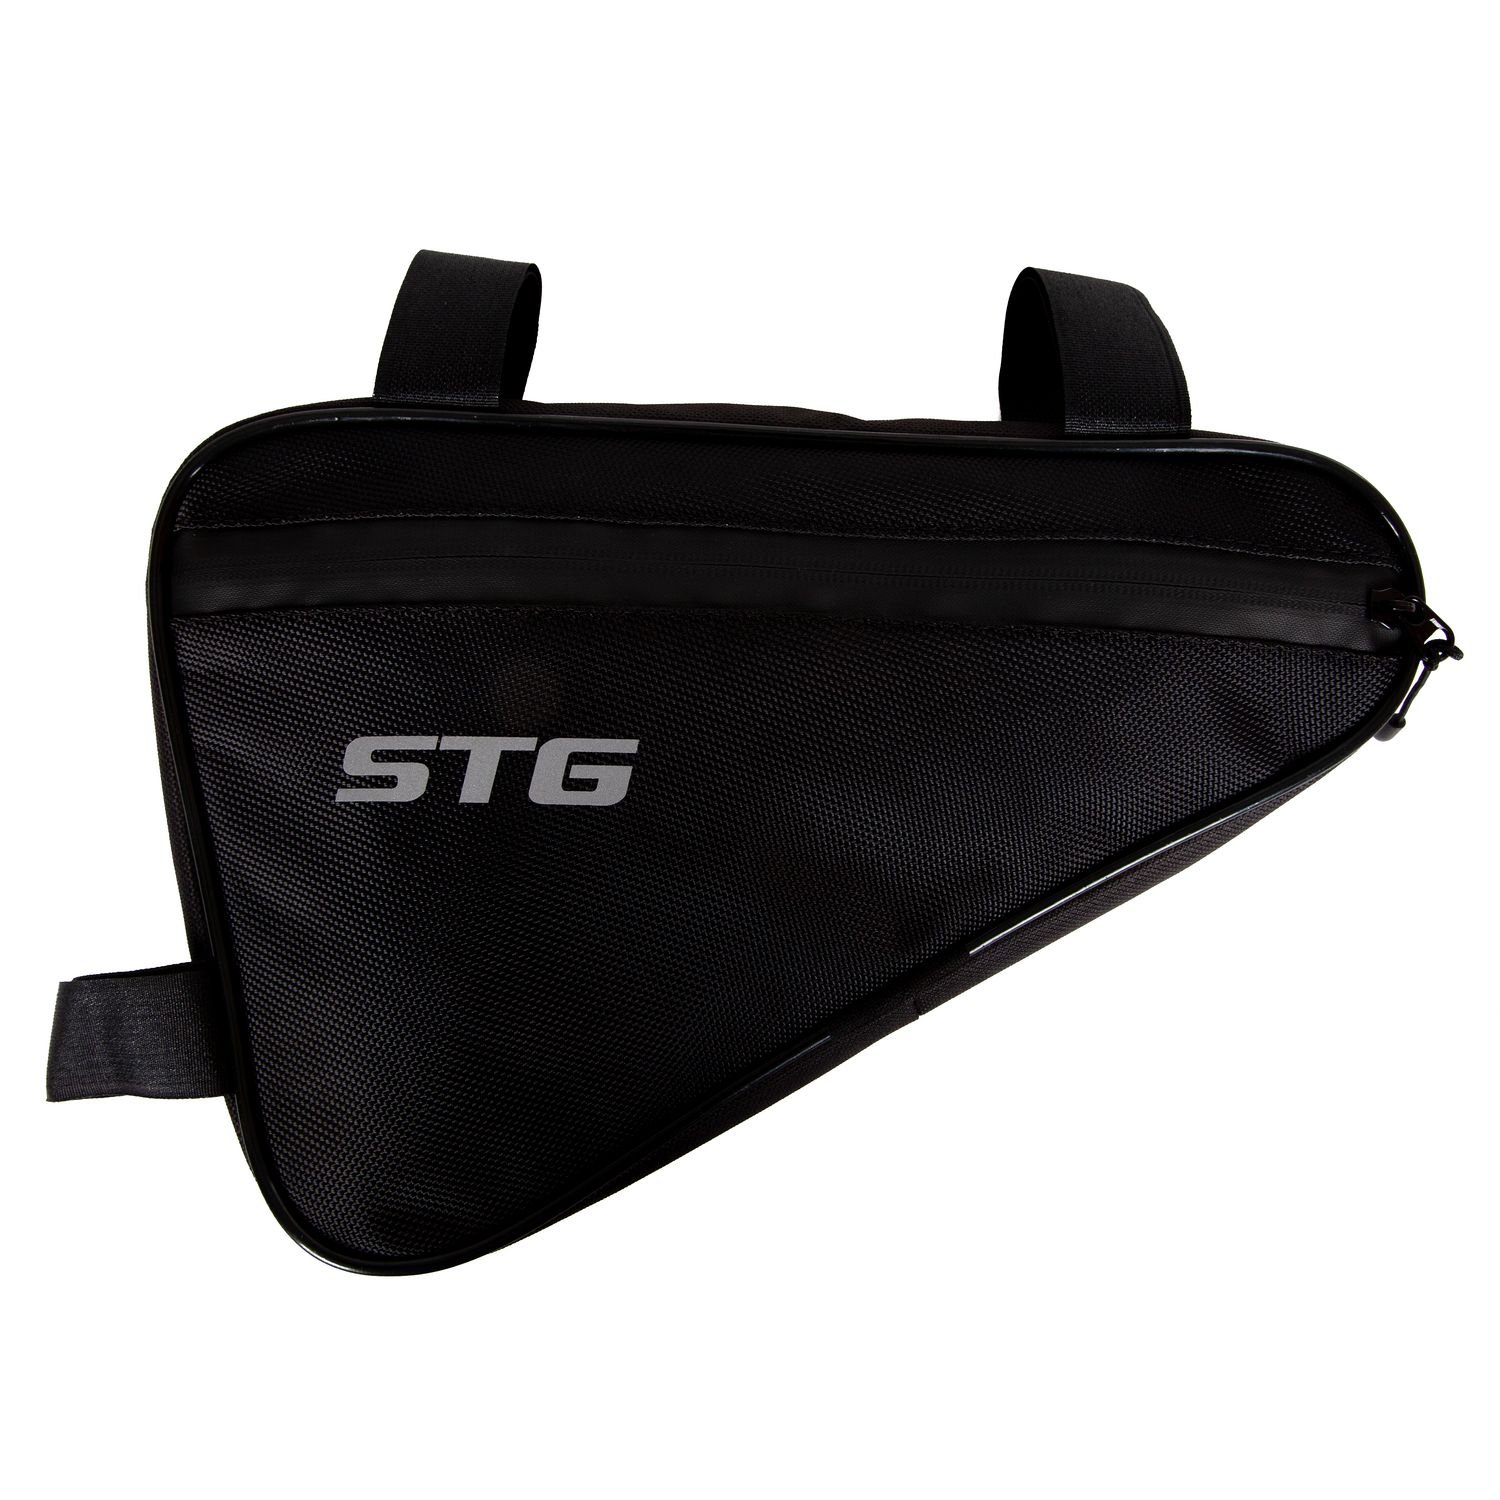 Велосумка STG 555-532, под раму, влагозащищенная, 31х20х5 см, 2.5 л, черный, Х108350 УТ-00286457 - фото 2